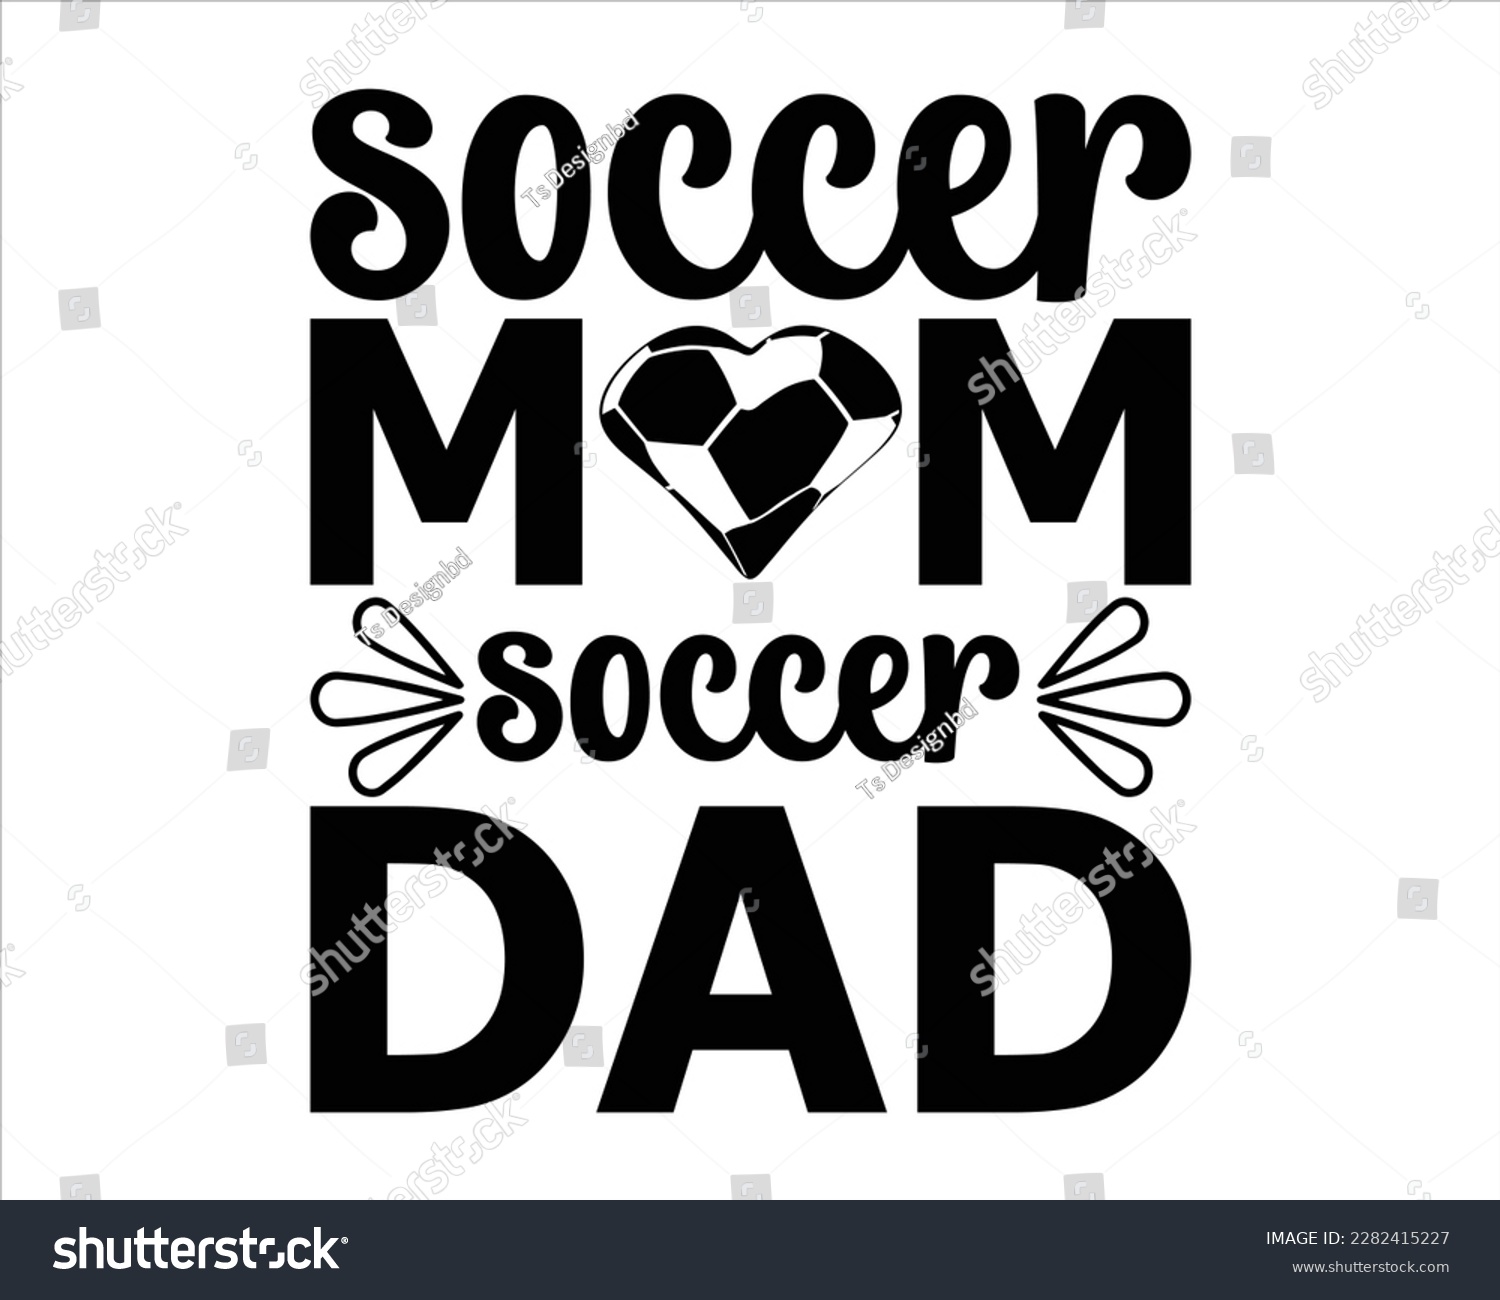 SVG of Soccer Mom Soccer Dad svg design,Soccer svg Design,Soccer Mom Svg,Soccer Mom Life Svg,FootBall Svg,Soccer Ball Svg,Soccer Clipart,Sports, Cut File Cricut,Game Day Svg svg